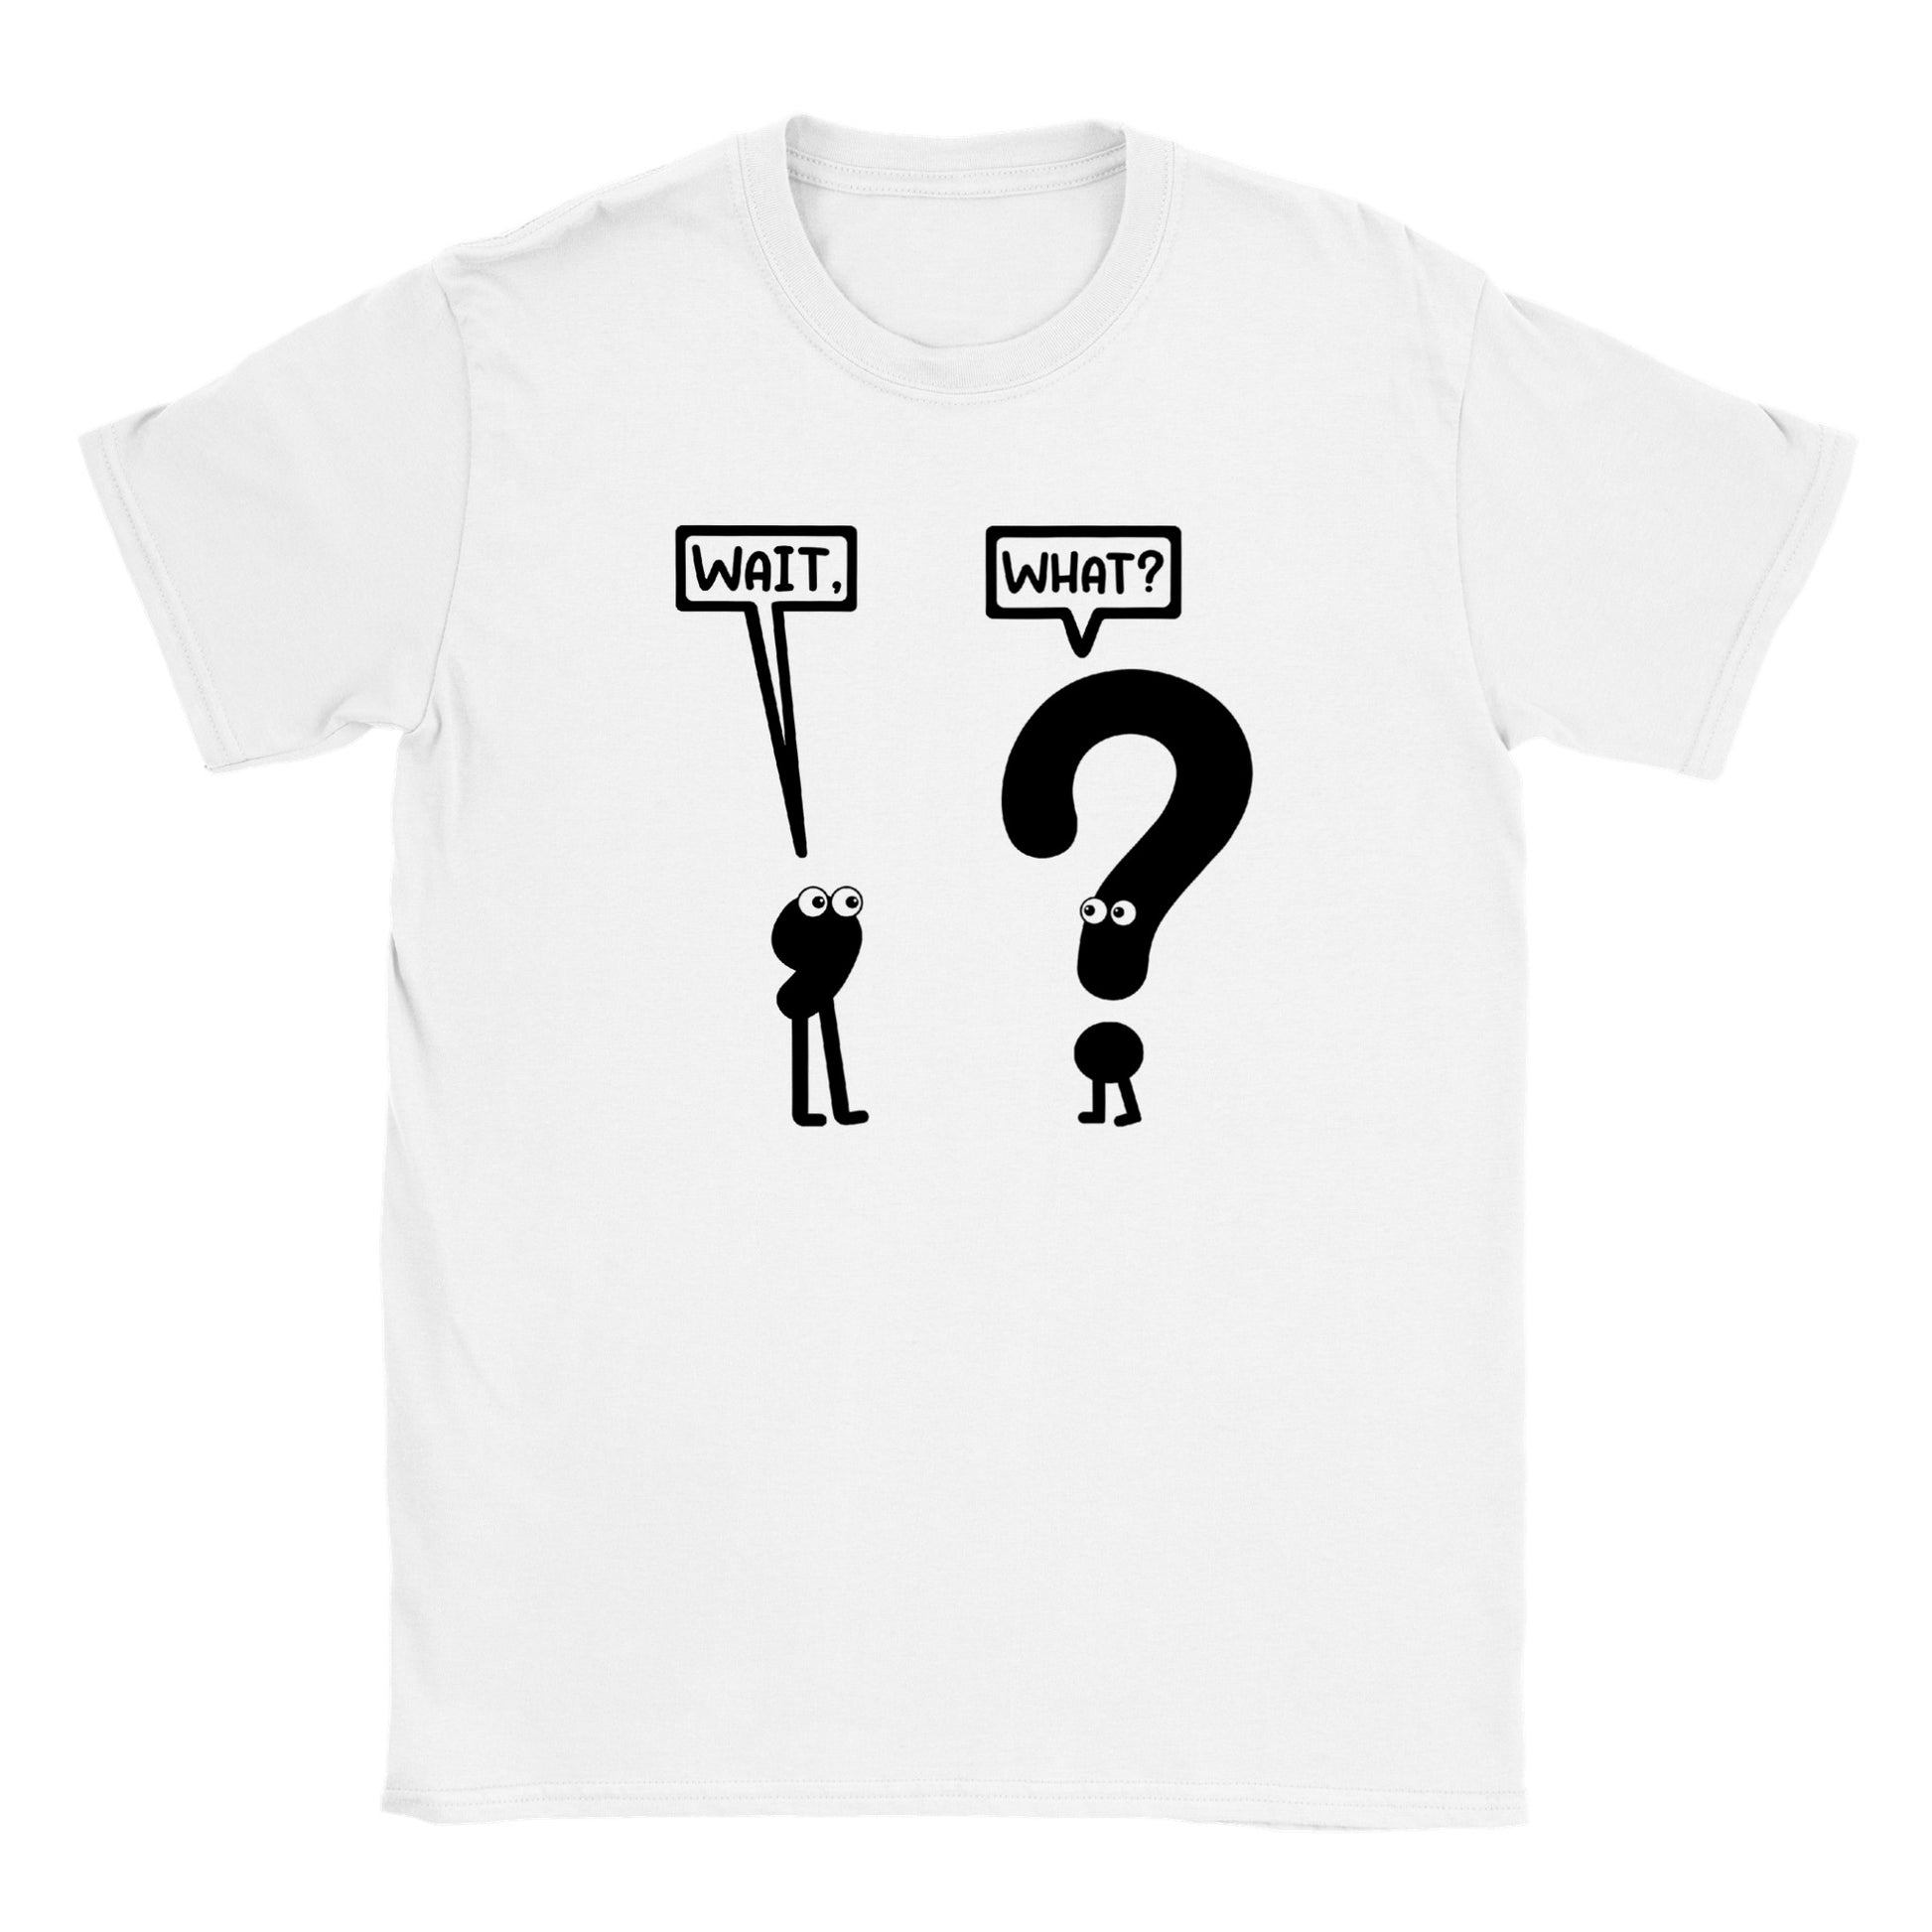 Wait, What? - Classic Unisex Crewneck T-shirt - Mister Snarky's